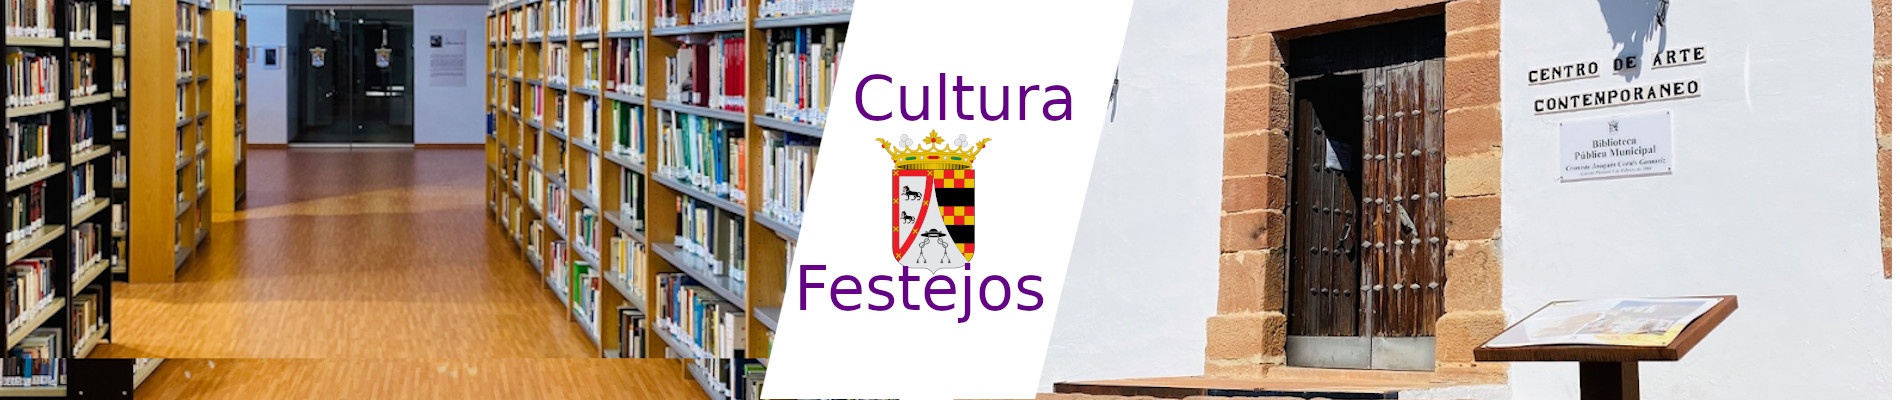 Banner decorativo cultura y festejos